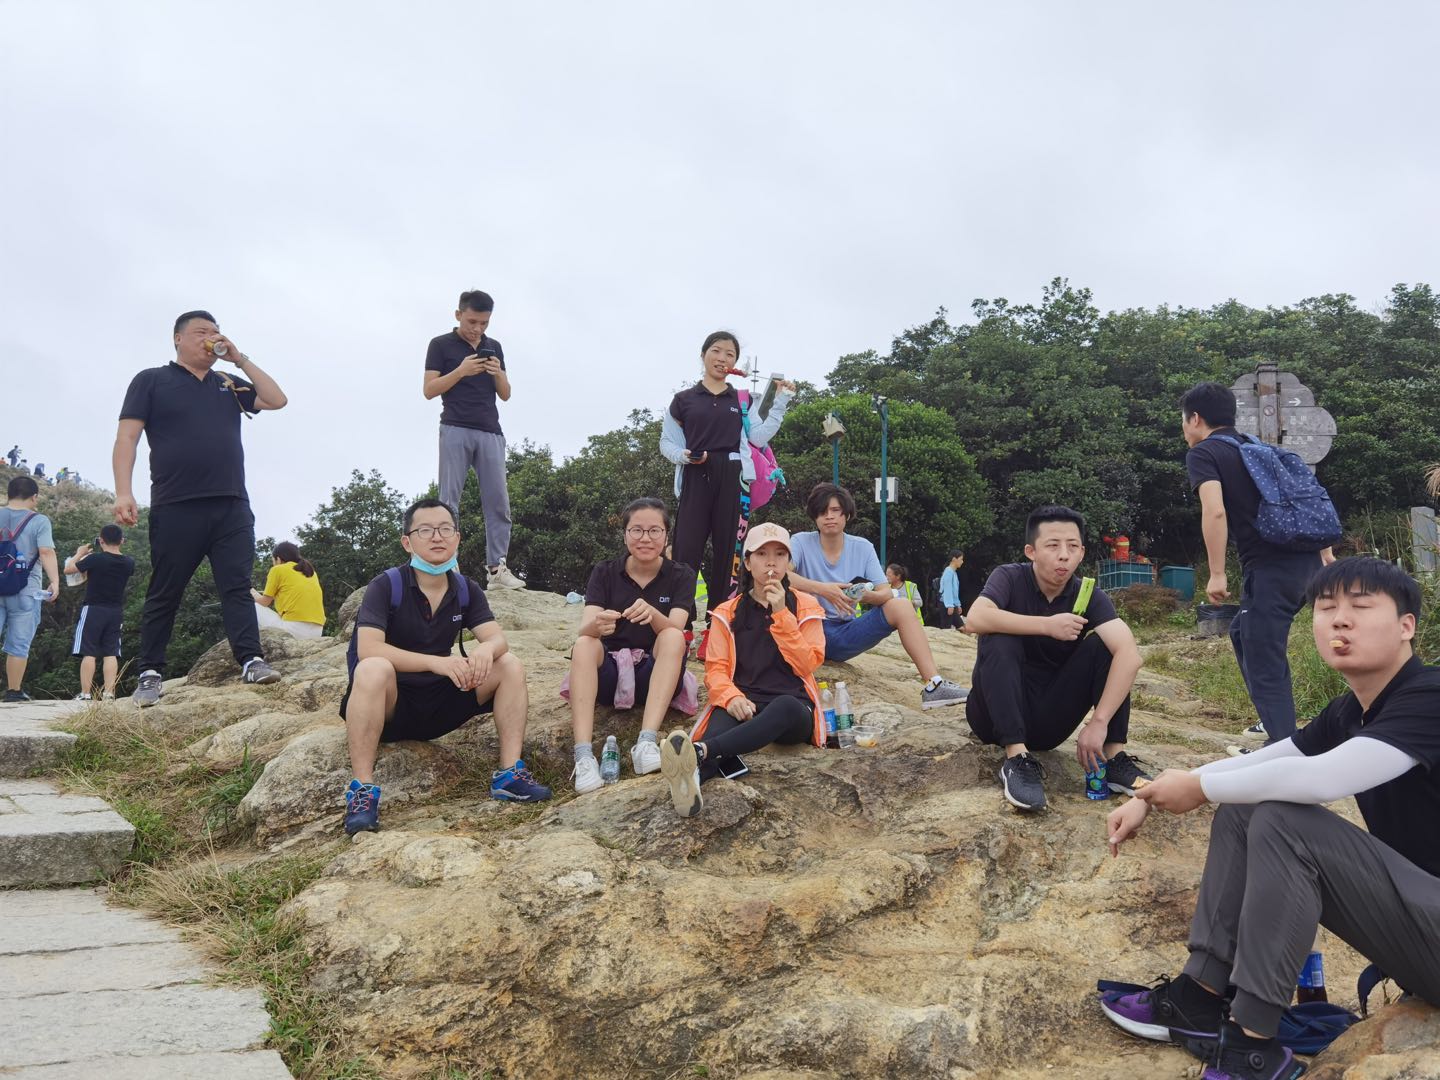 DM梁信科技2020年梧桐山爬山比赛